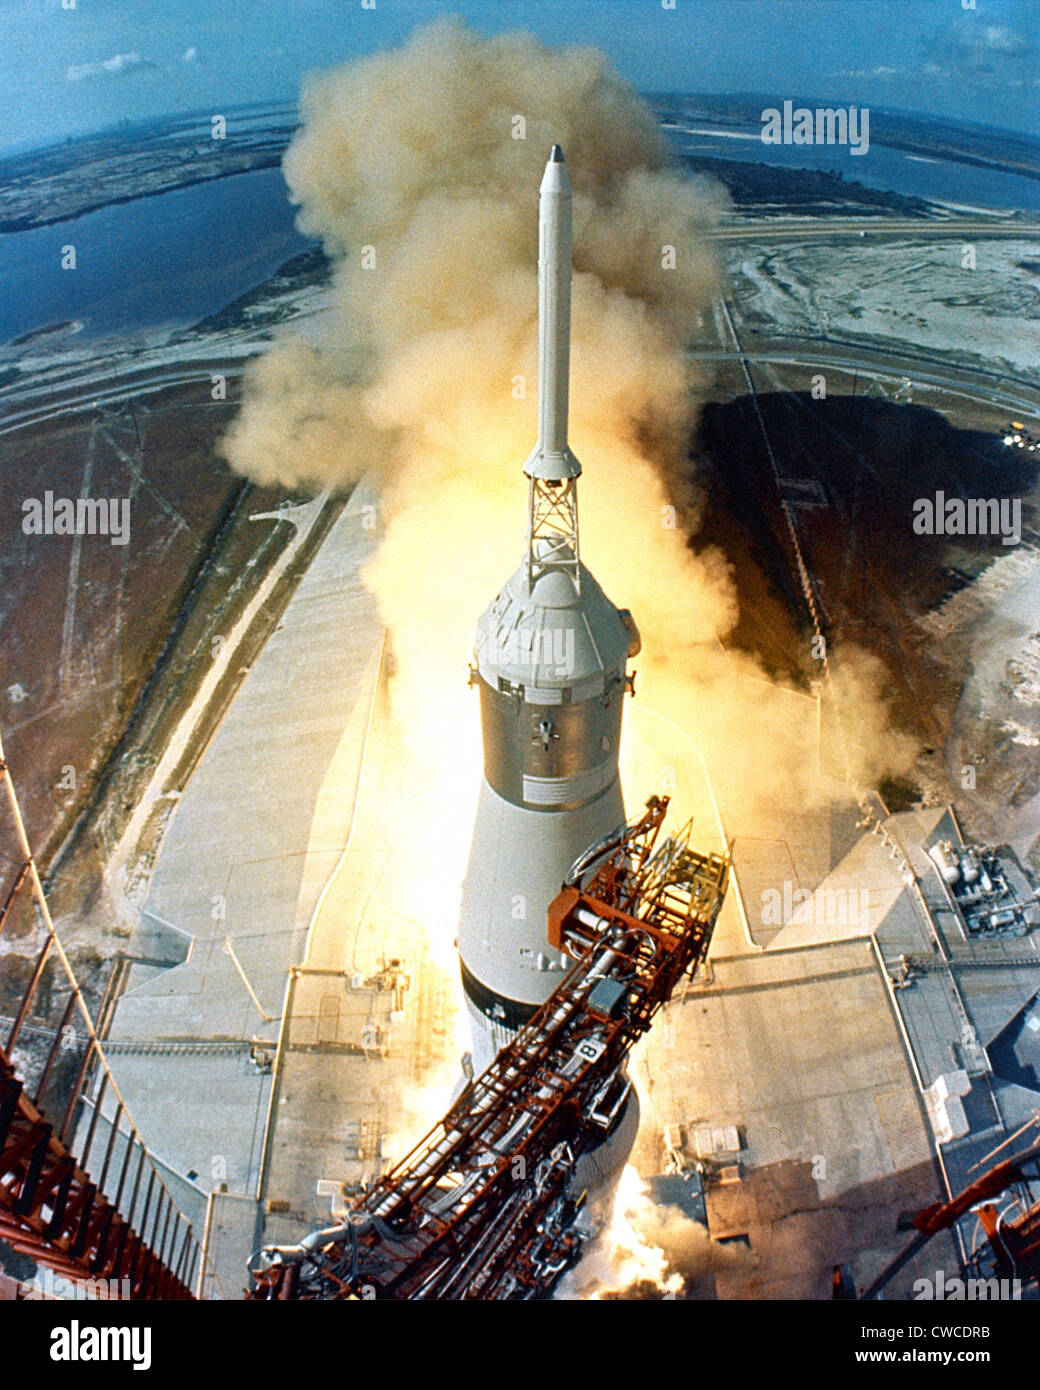 Mond-Start. Der Start von Apollo 11 auf einer Saturn V-Rakete startet die Mond-Mission des Astronauten Neil Armstrong, Michael Stockfoto